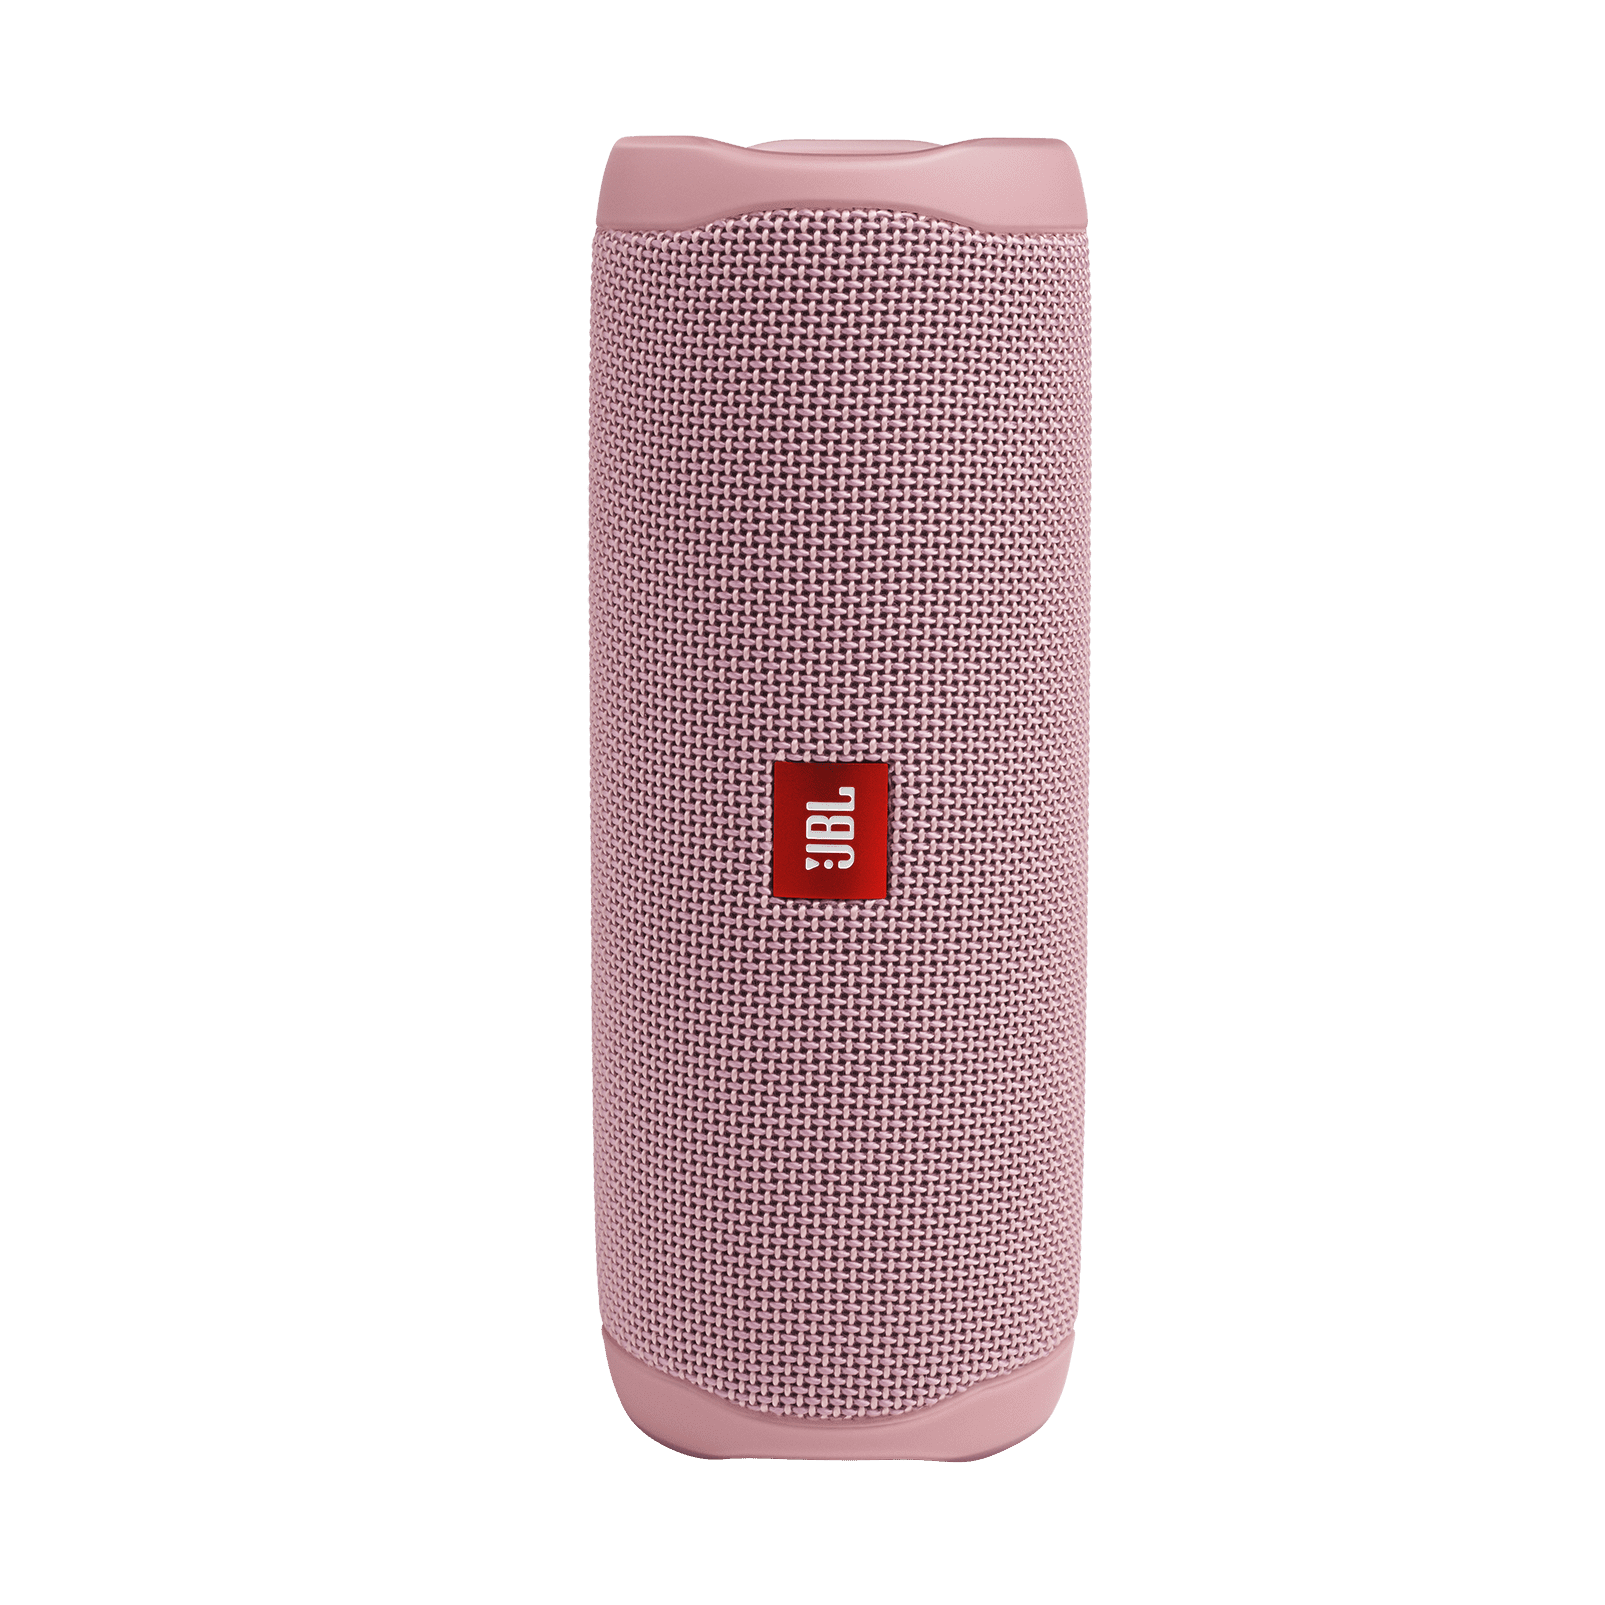 JBL Flip 5 Portable Waterproof Wireless Bluetooth Speaker - Sand 